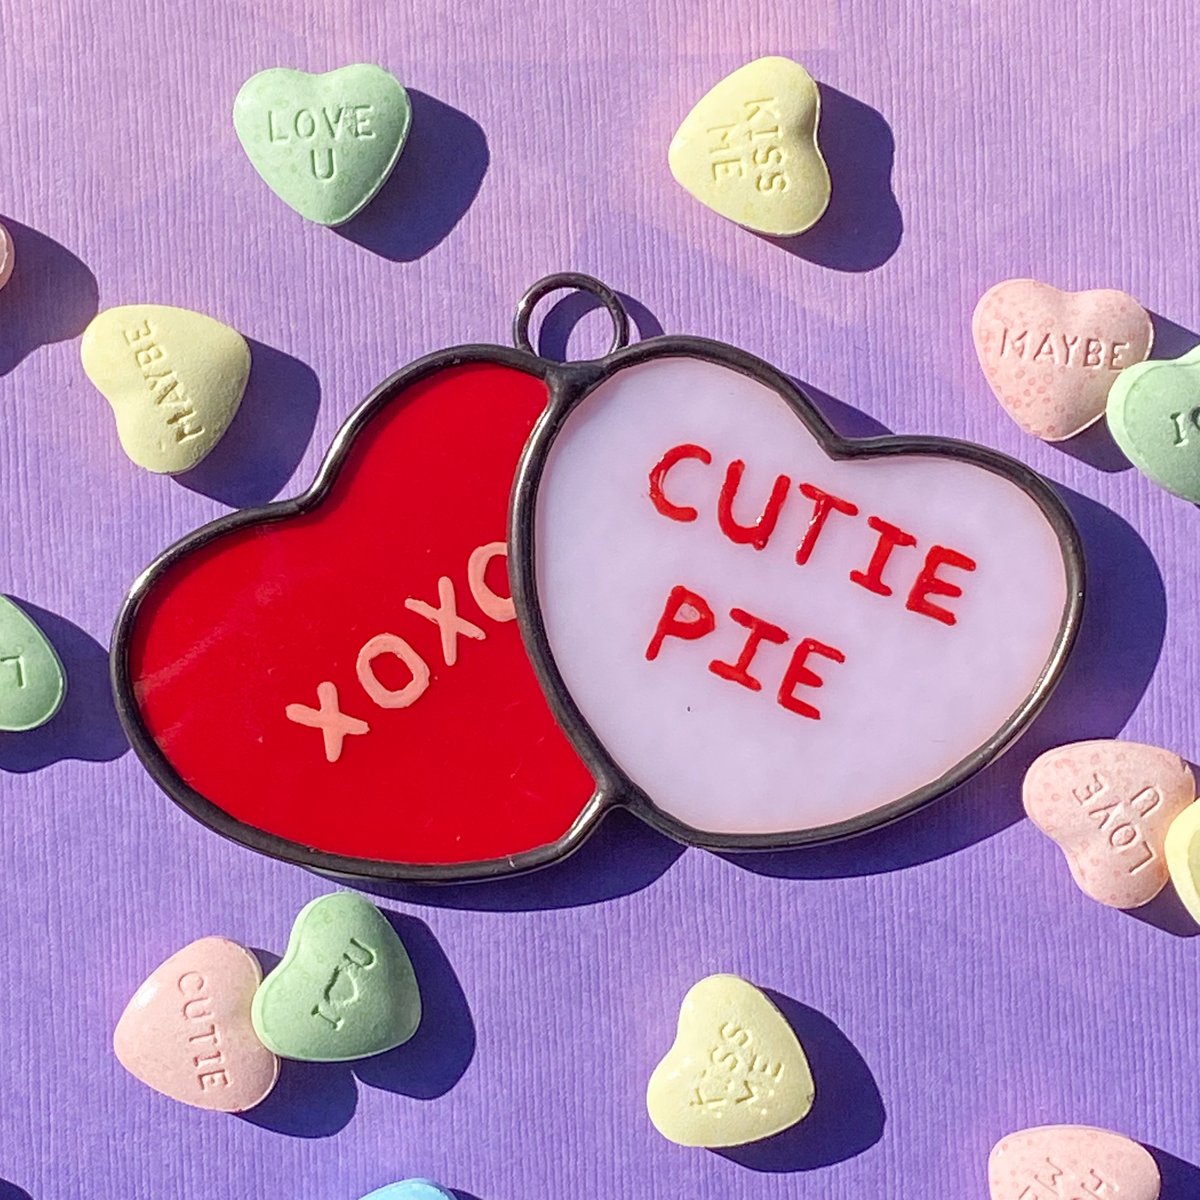 Image of Xoxo Cutie Pie Conversation Hearts 